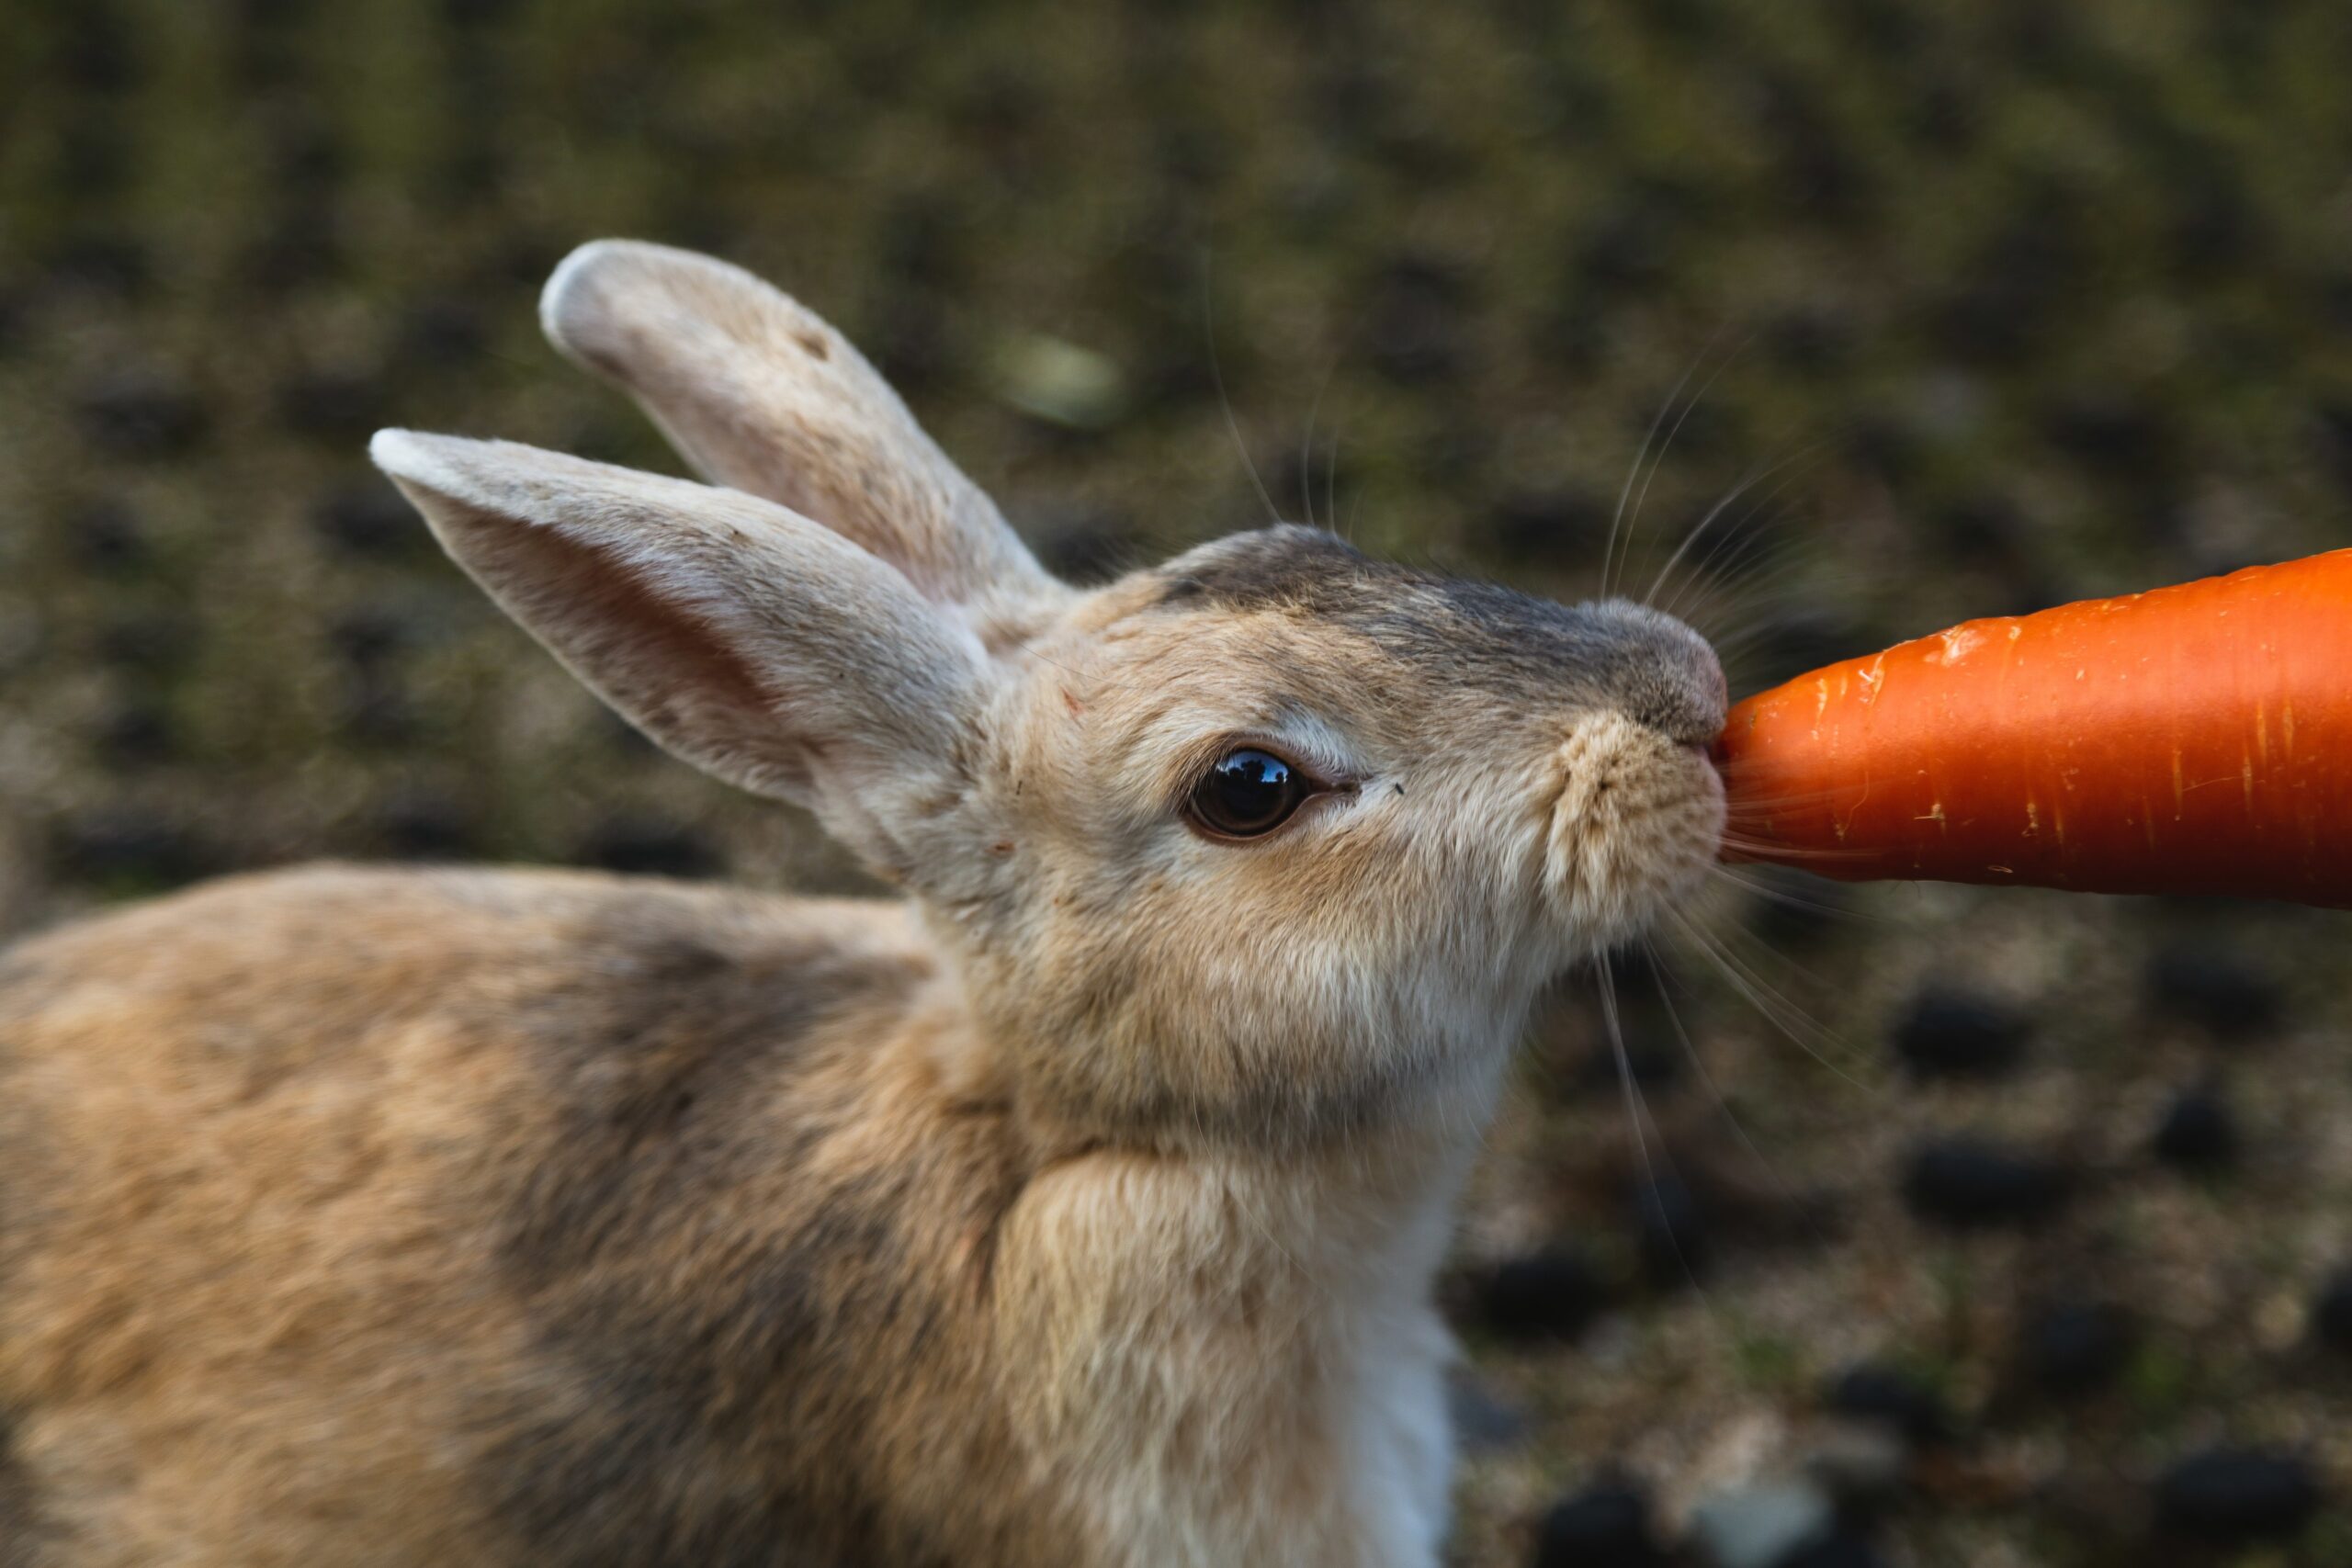 Jakie warzywa może jeść królik? Lista dozwolonych warzyw w diecie królika.